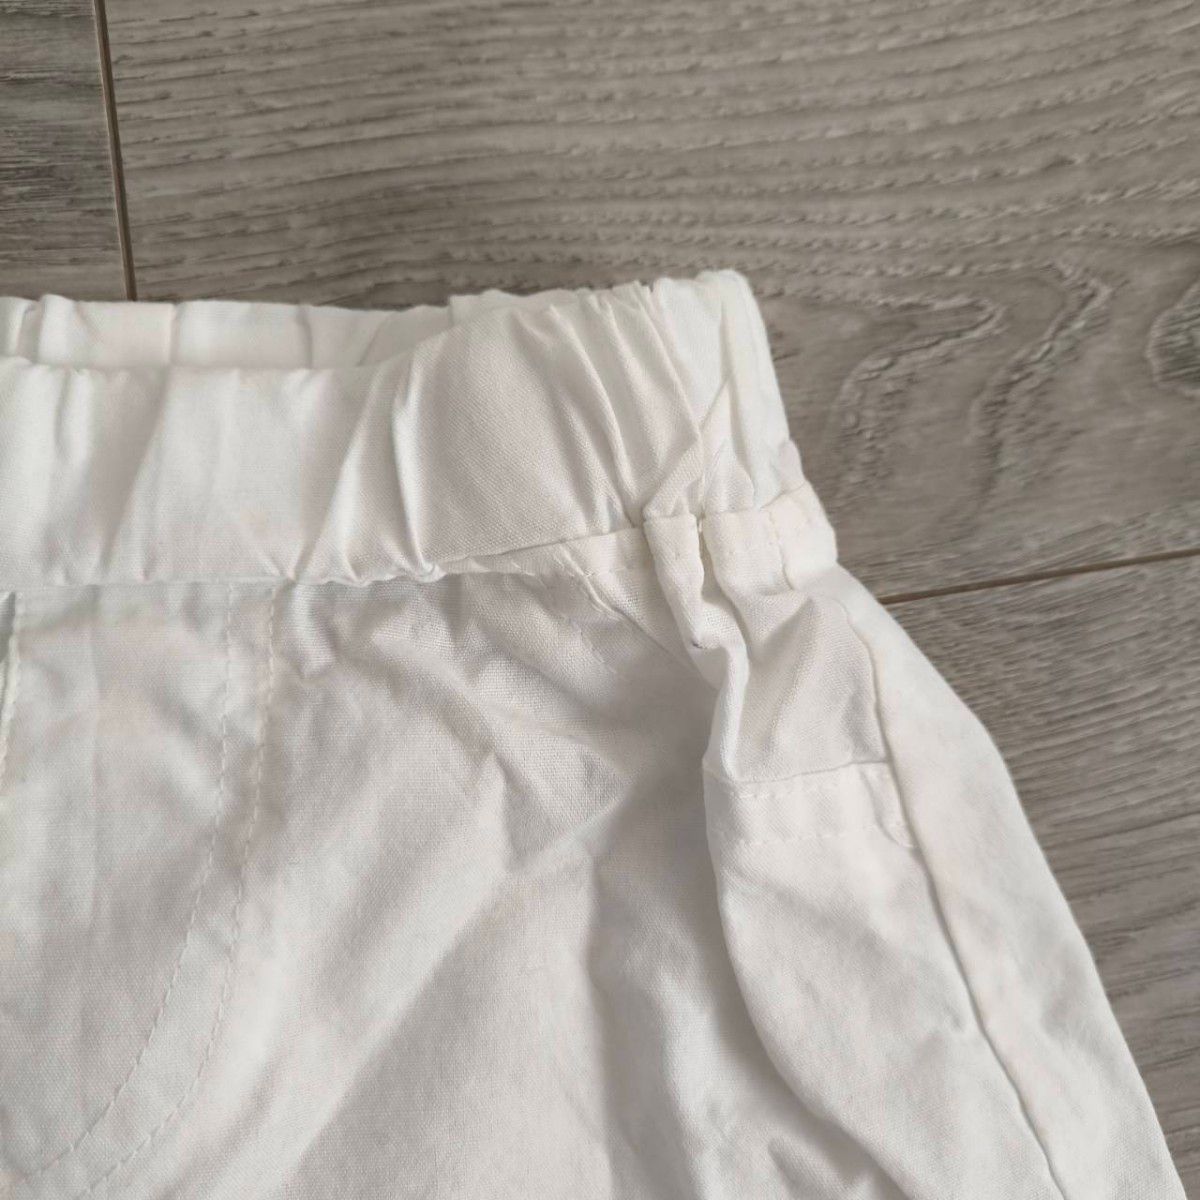  ショートパンツ 100 白 ホワイト キッズ キュロット 女の子 子供服 フリル 短パン 半ズボン